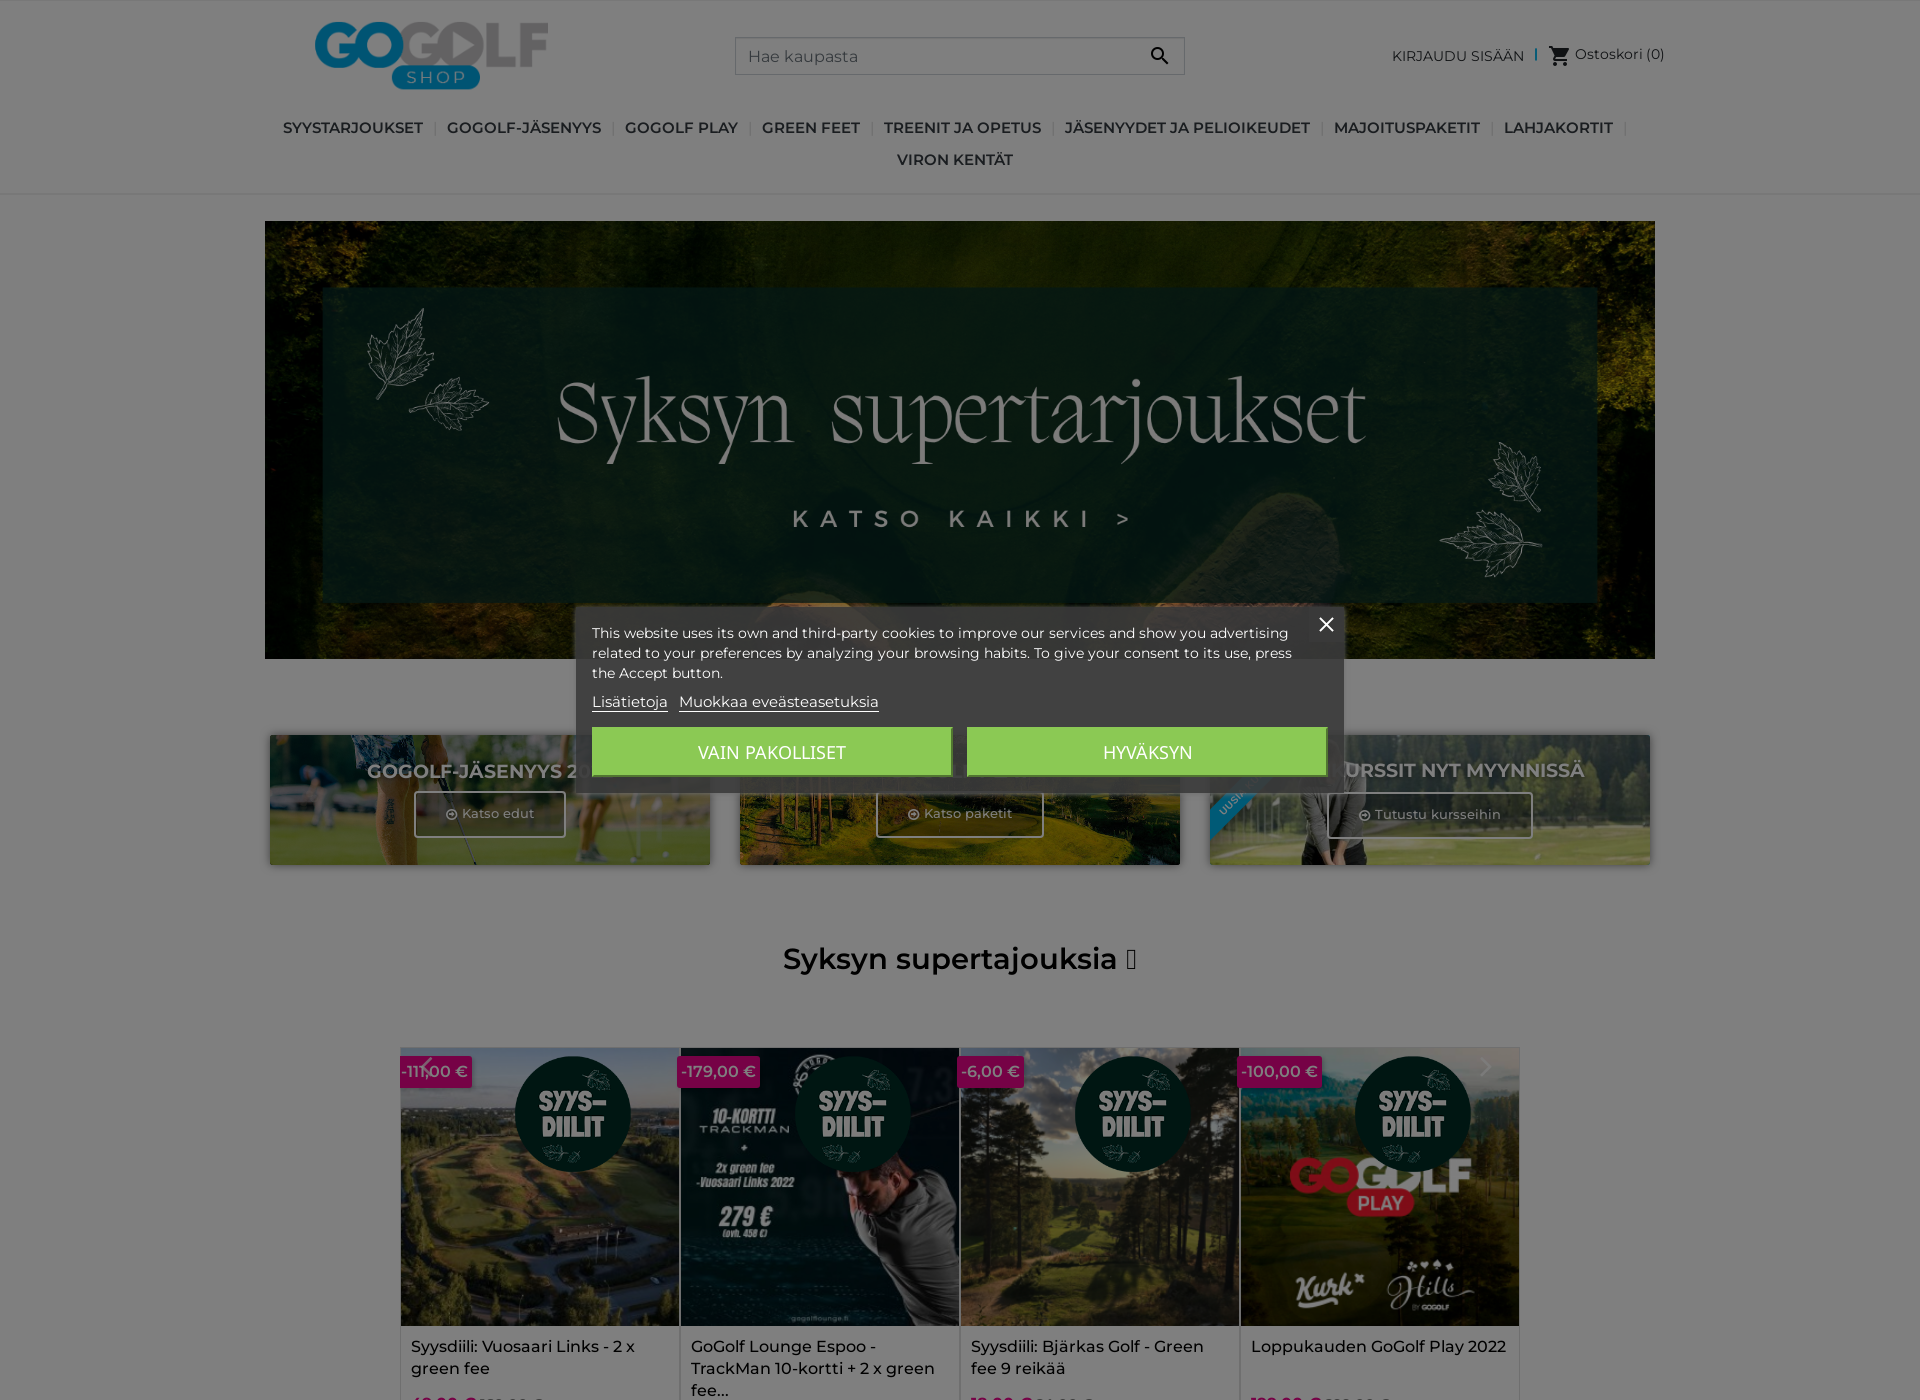 Näyttökuva gogolfshop.fi